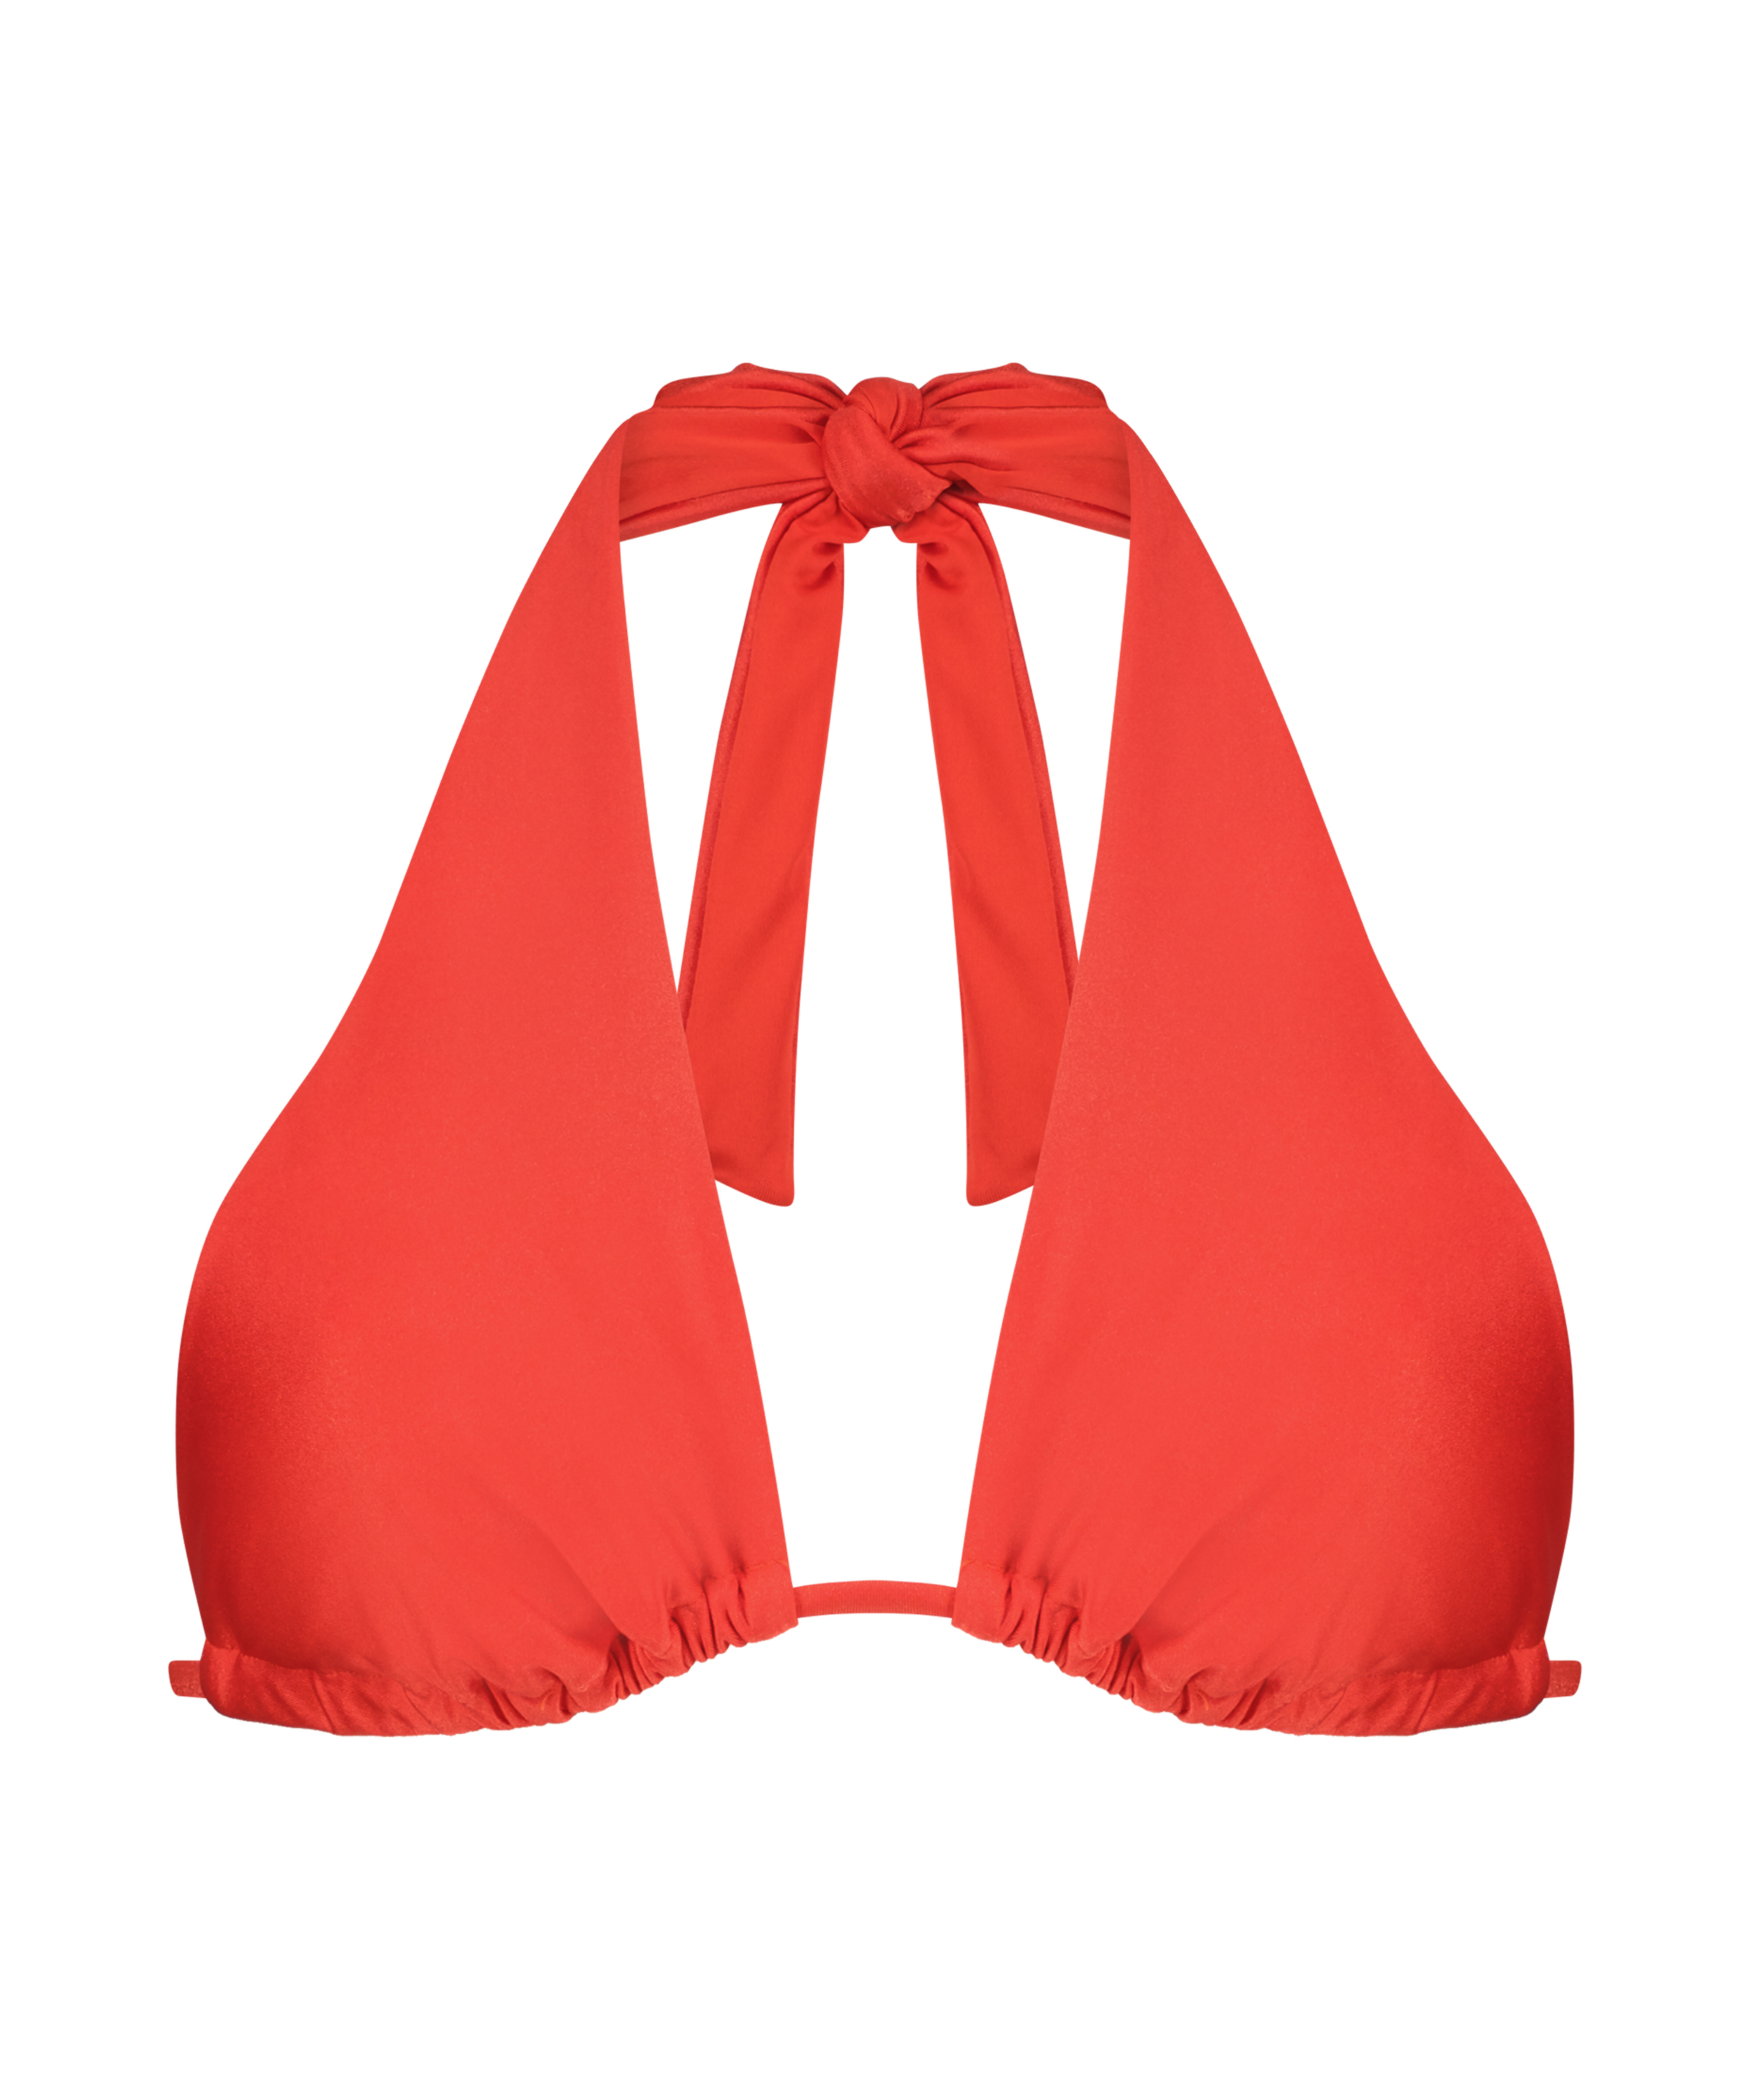 Bikini triangular multiusos BoraBora, Rojo, main